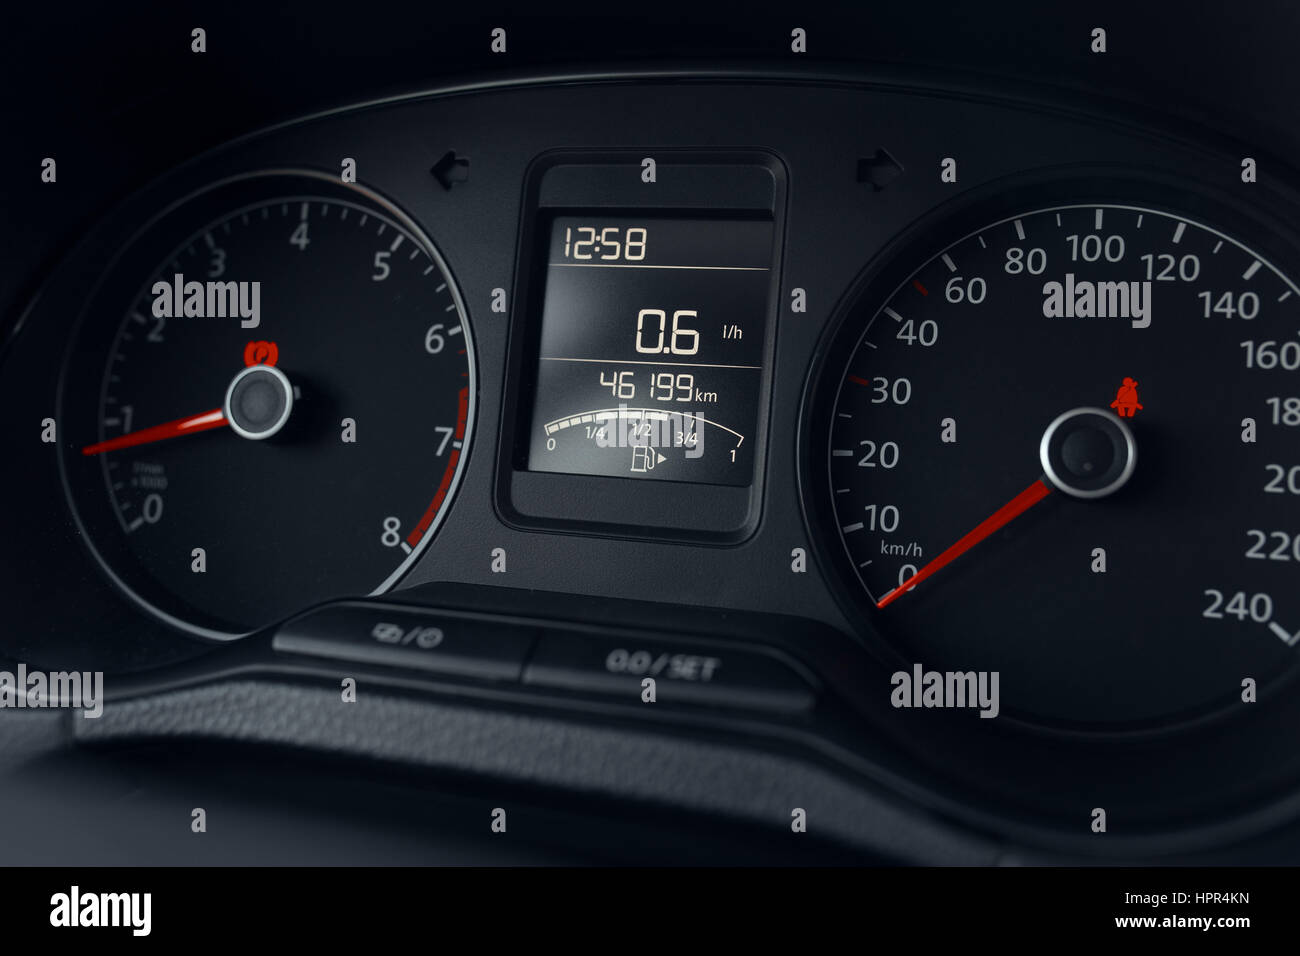 Tableau de bord d'une voiture moderne, indicateur de vitesse, tachymètre, odomètre Banque D'Images